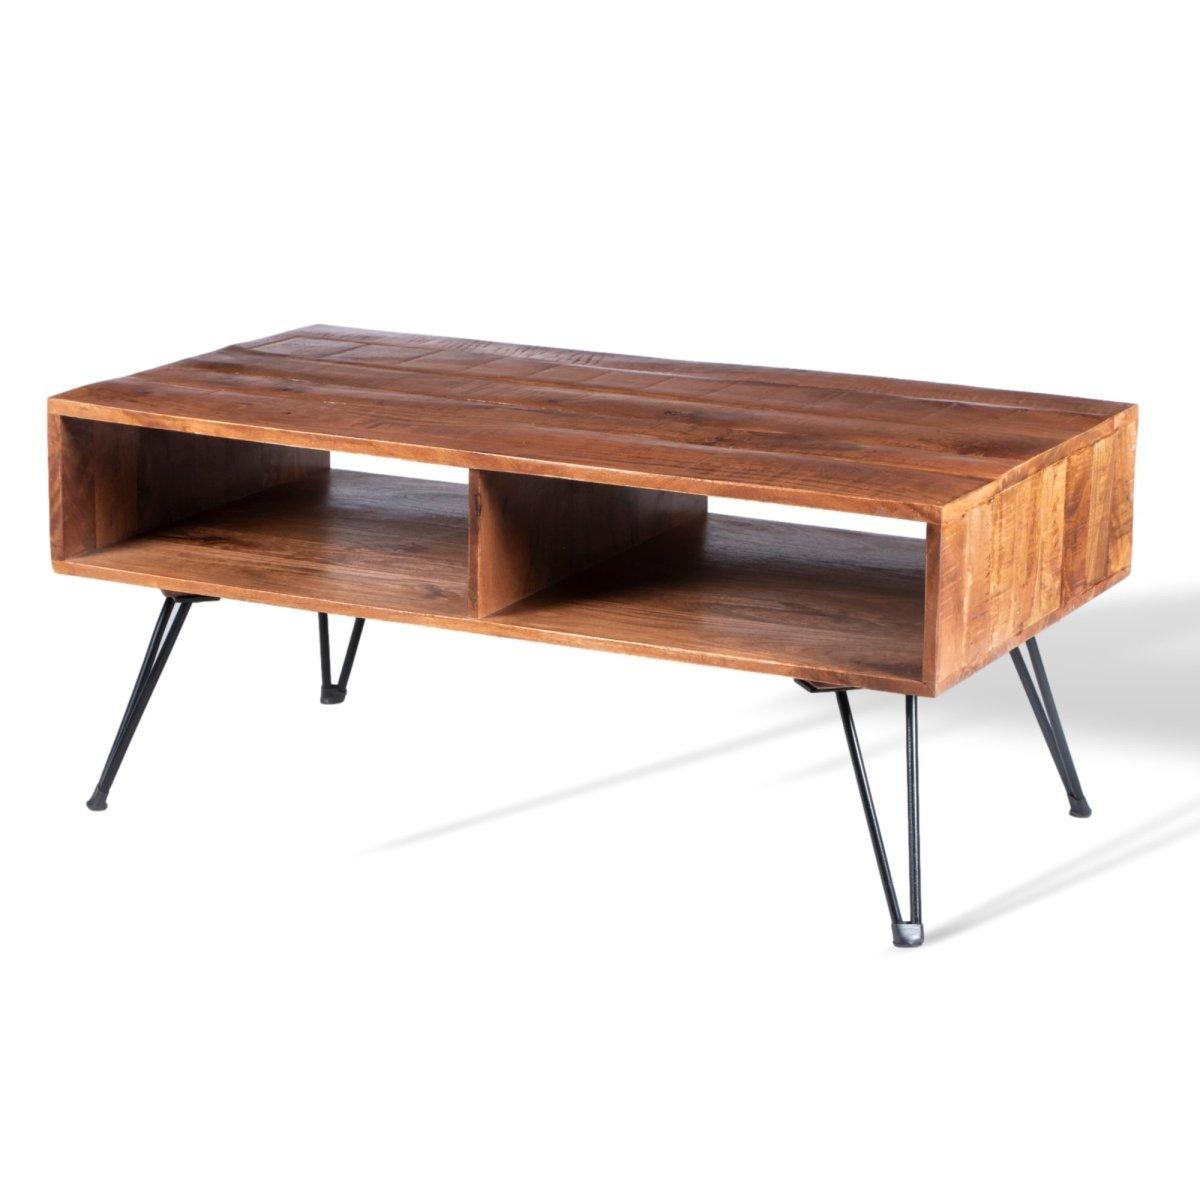 Table basse ouverte en bois de manguier - Rustic Furniture Outlet